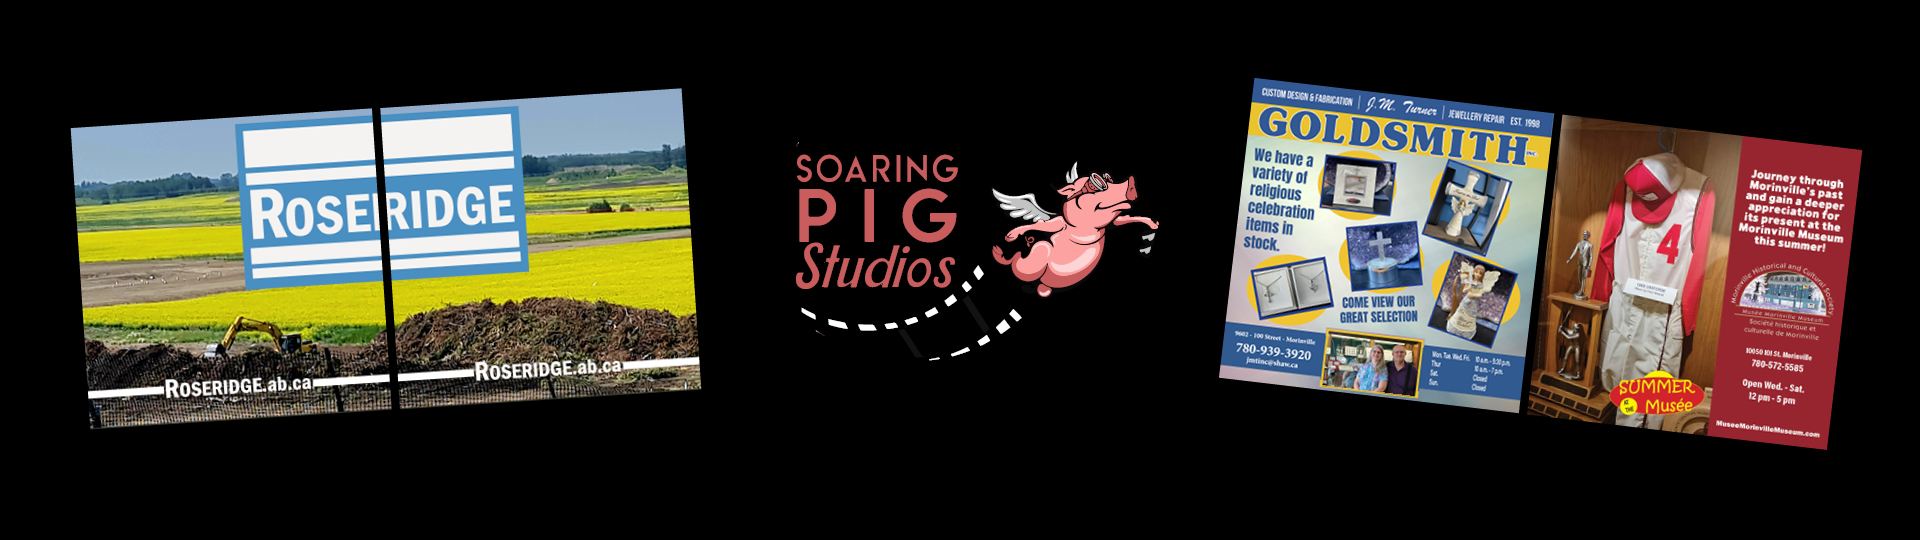 Soaring Pig Studios Social Media Management